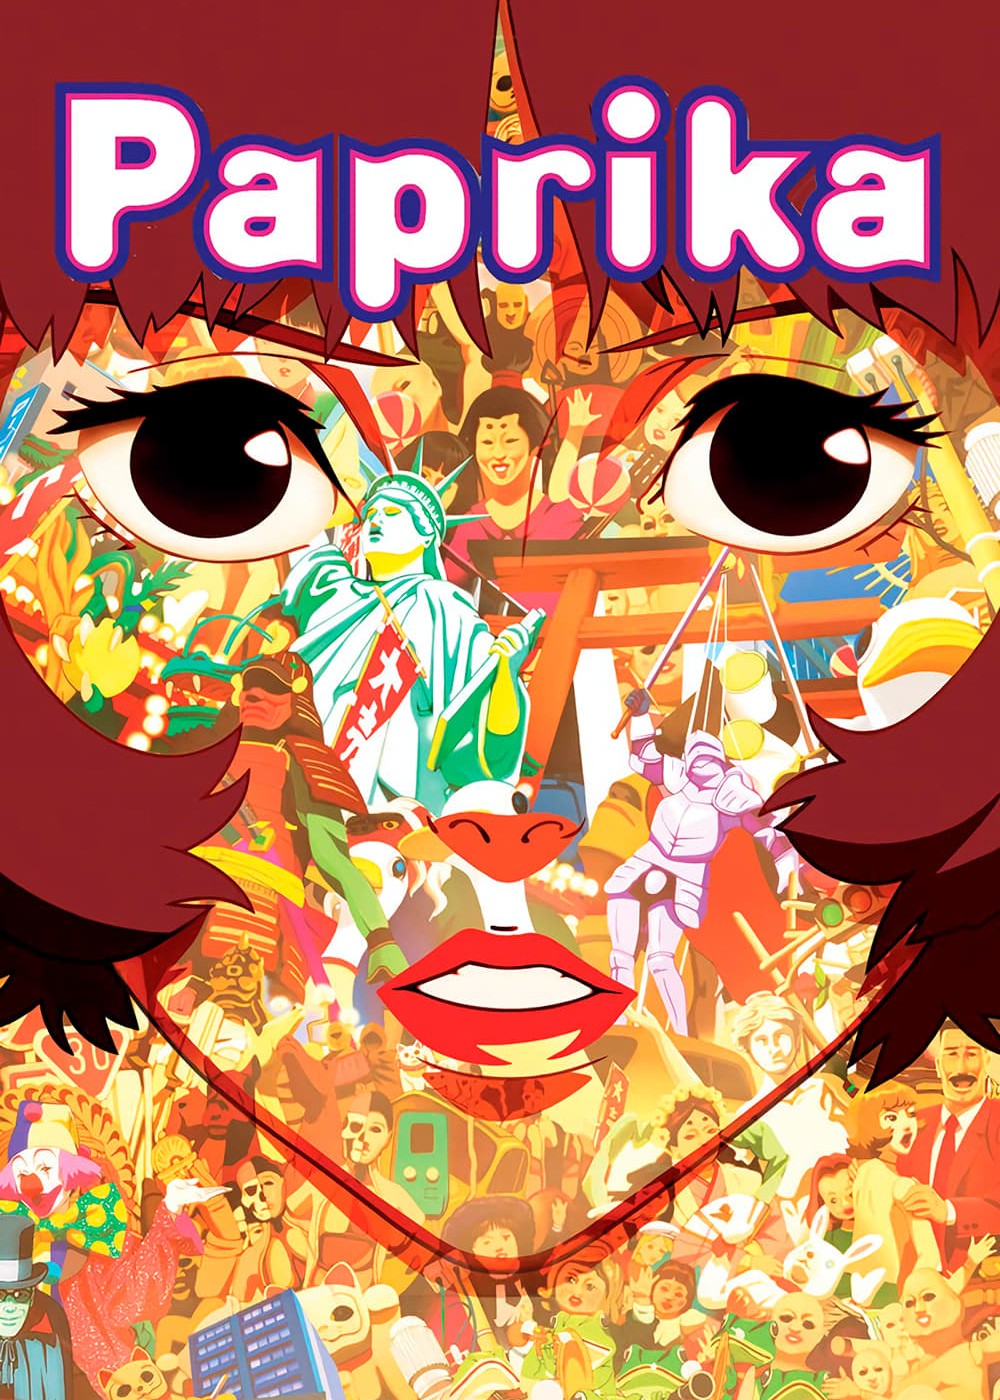 Paprika - Paprika (2006)